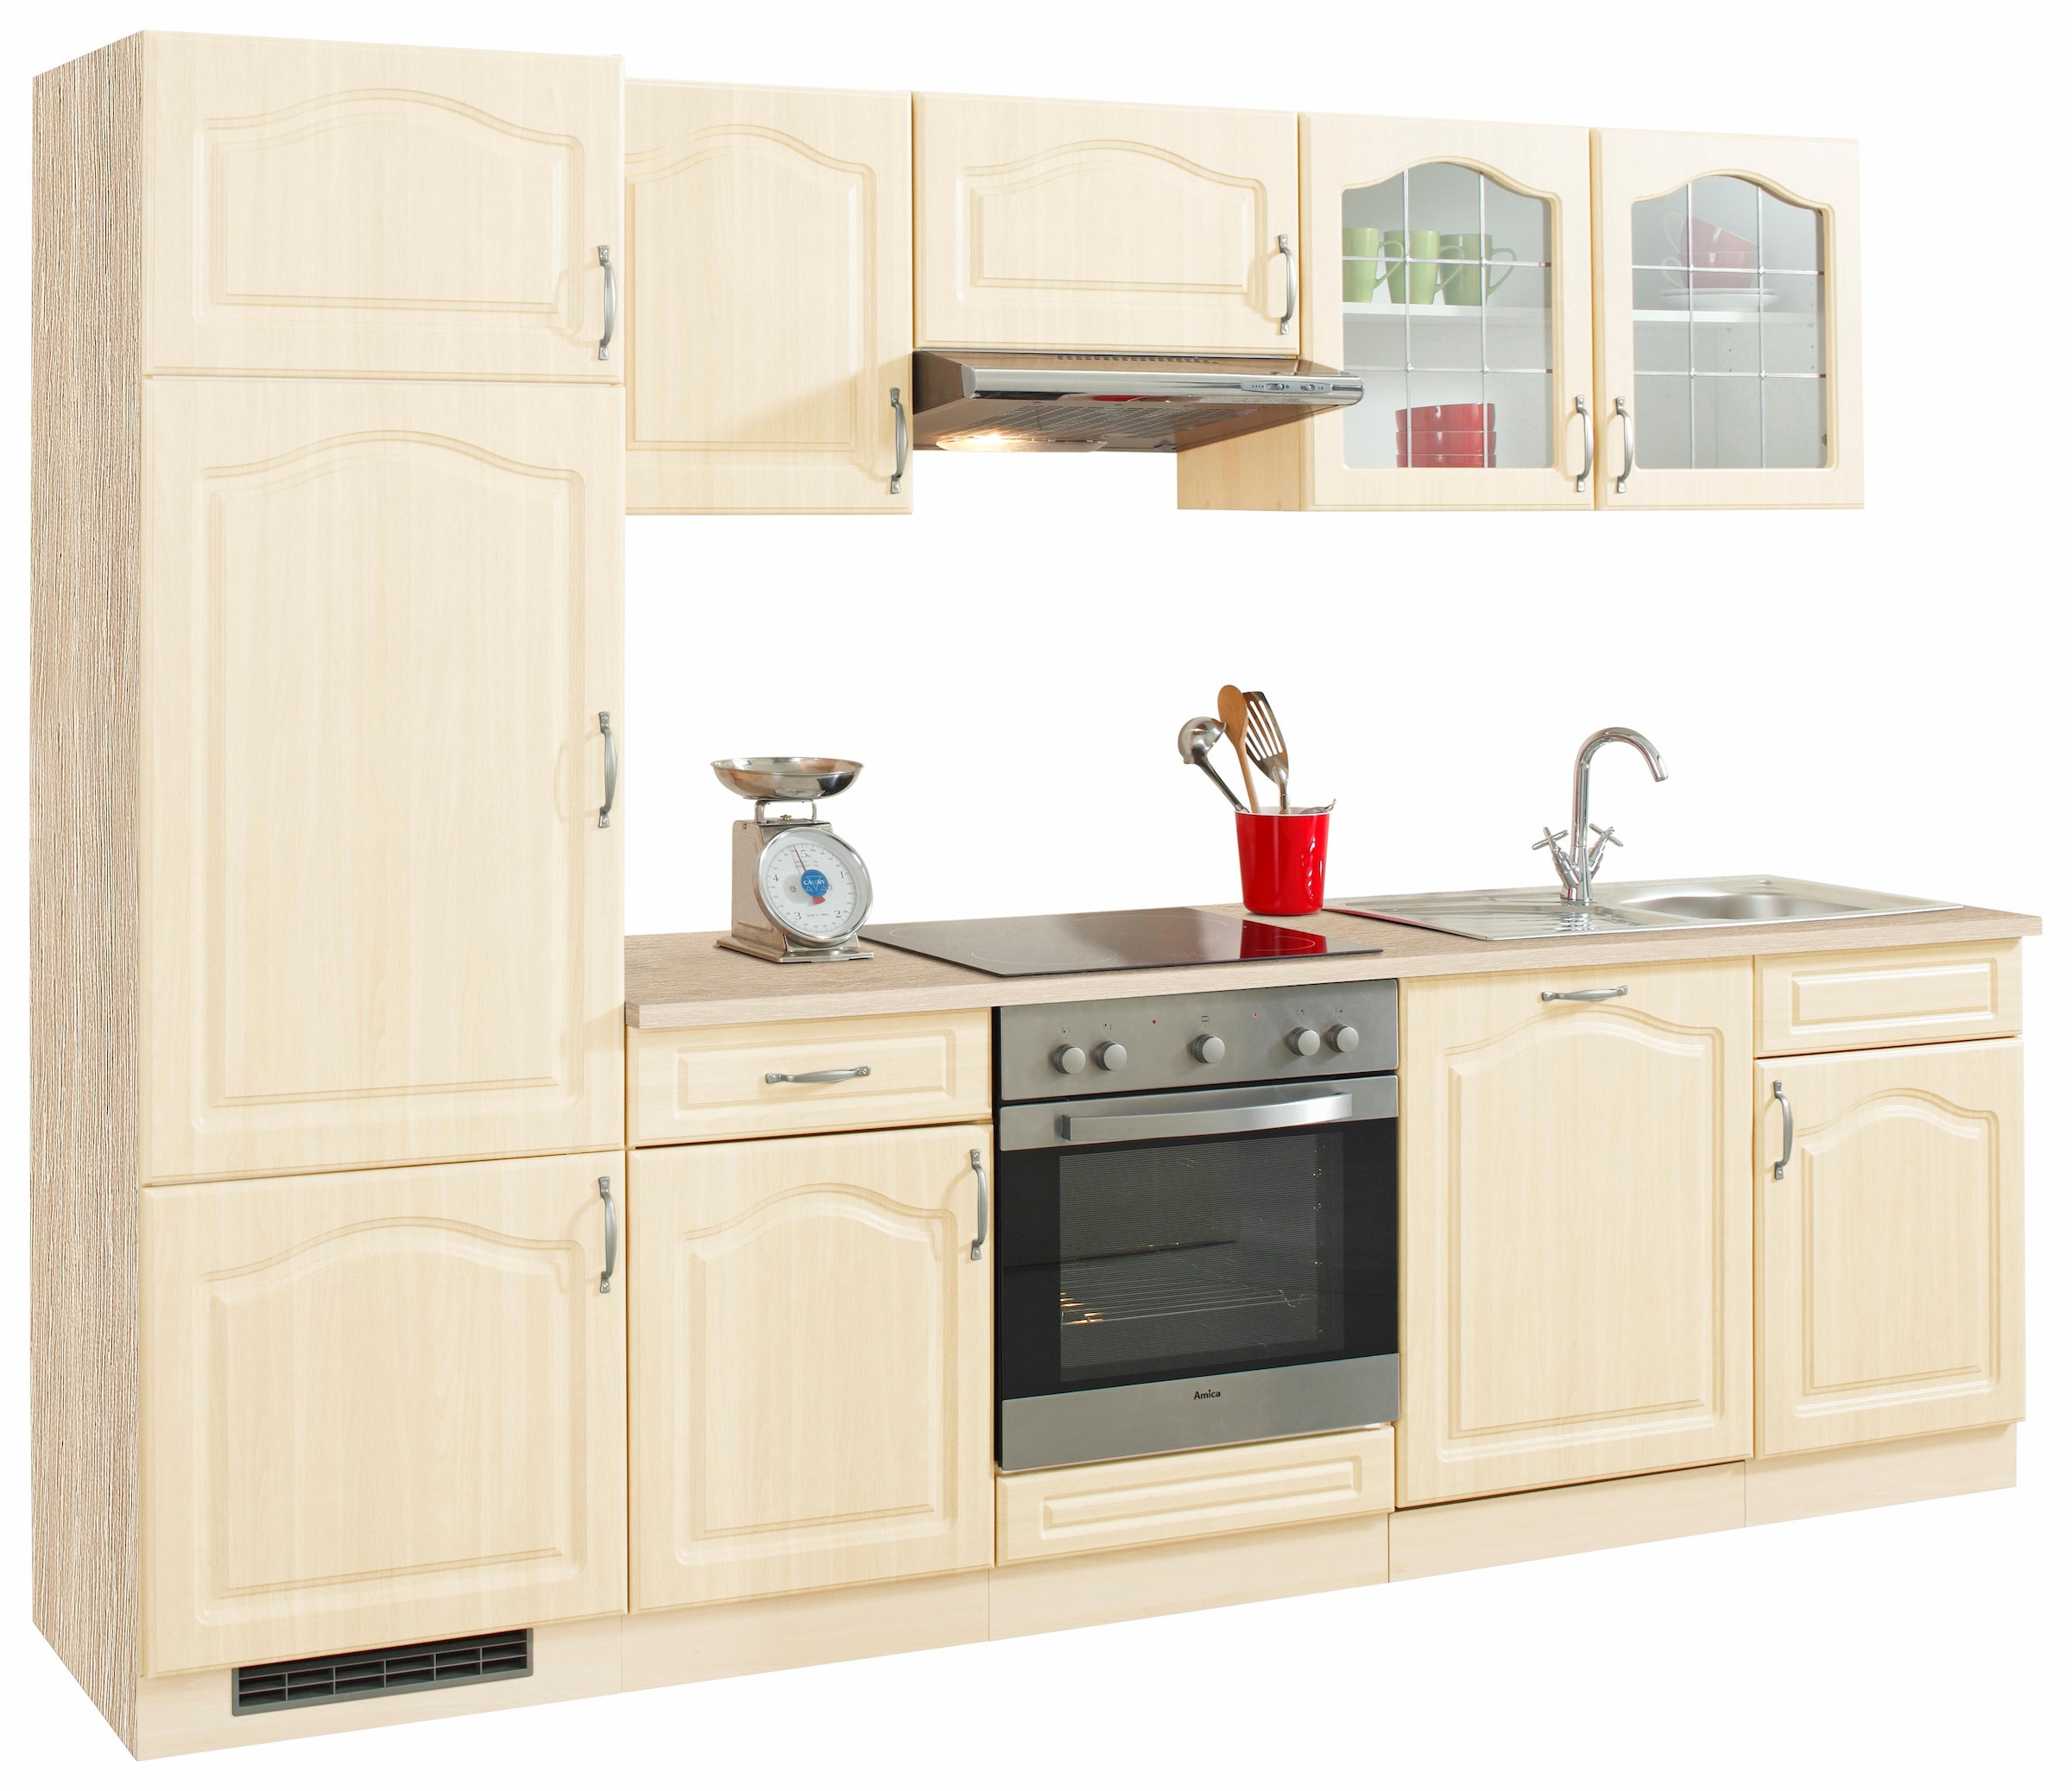 Preisvergleich für wiho Küchen Küchenzeile Linz, mit E-Geräten, Breite 280  cm, SKU: 851902 | Ladendirekt